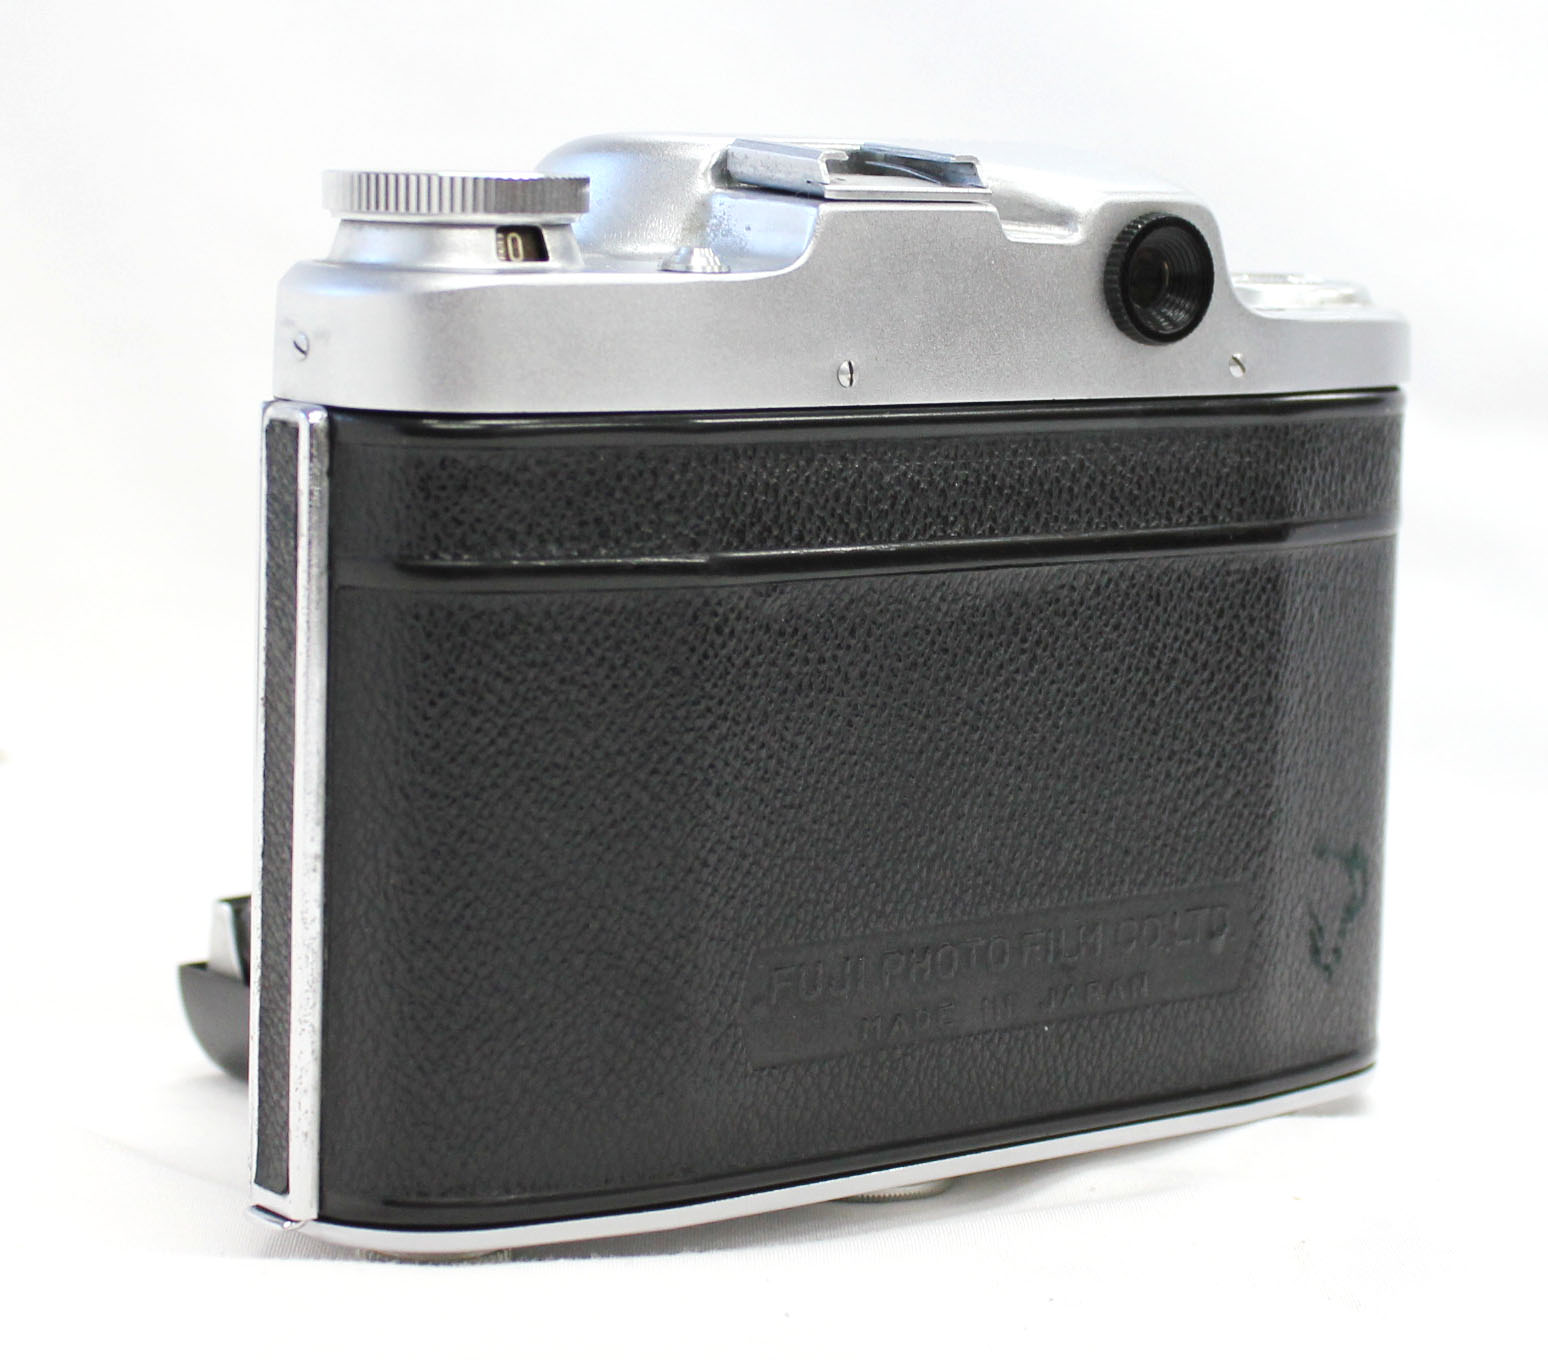 Fuji Super Fujica-6 Six 6x6 Medium Format Film Camera with Fujinar 75mm F/3.5 from Japan Photo 4